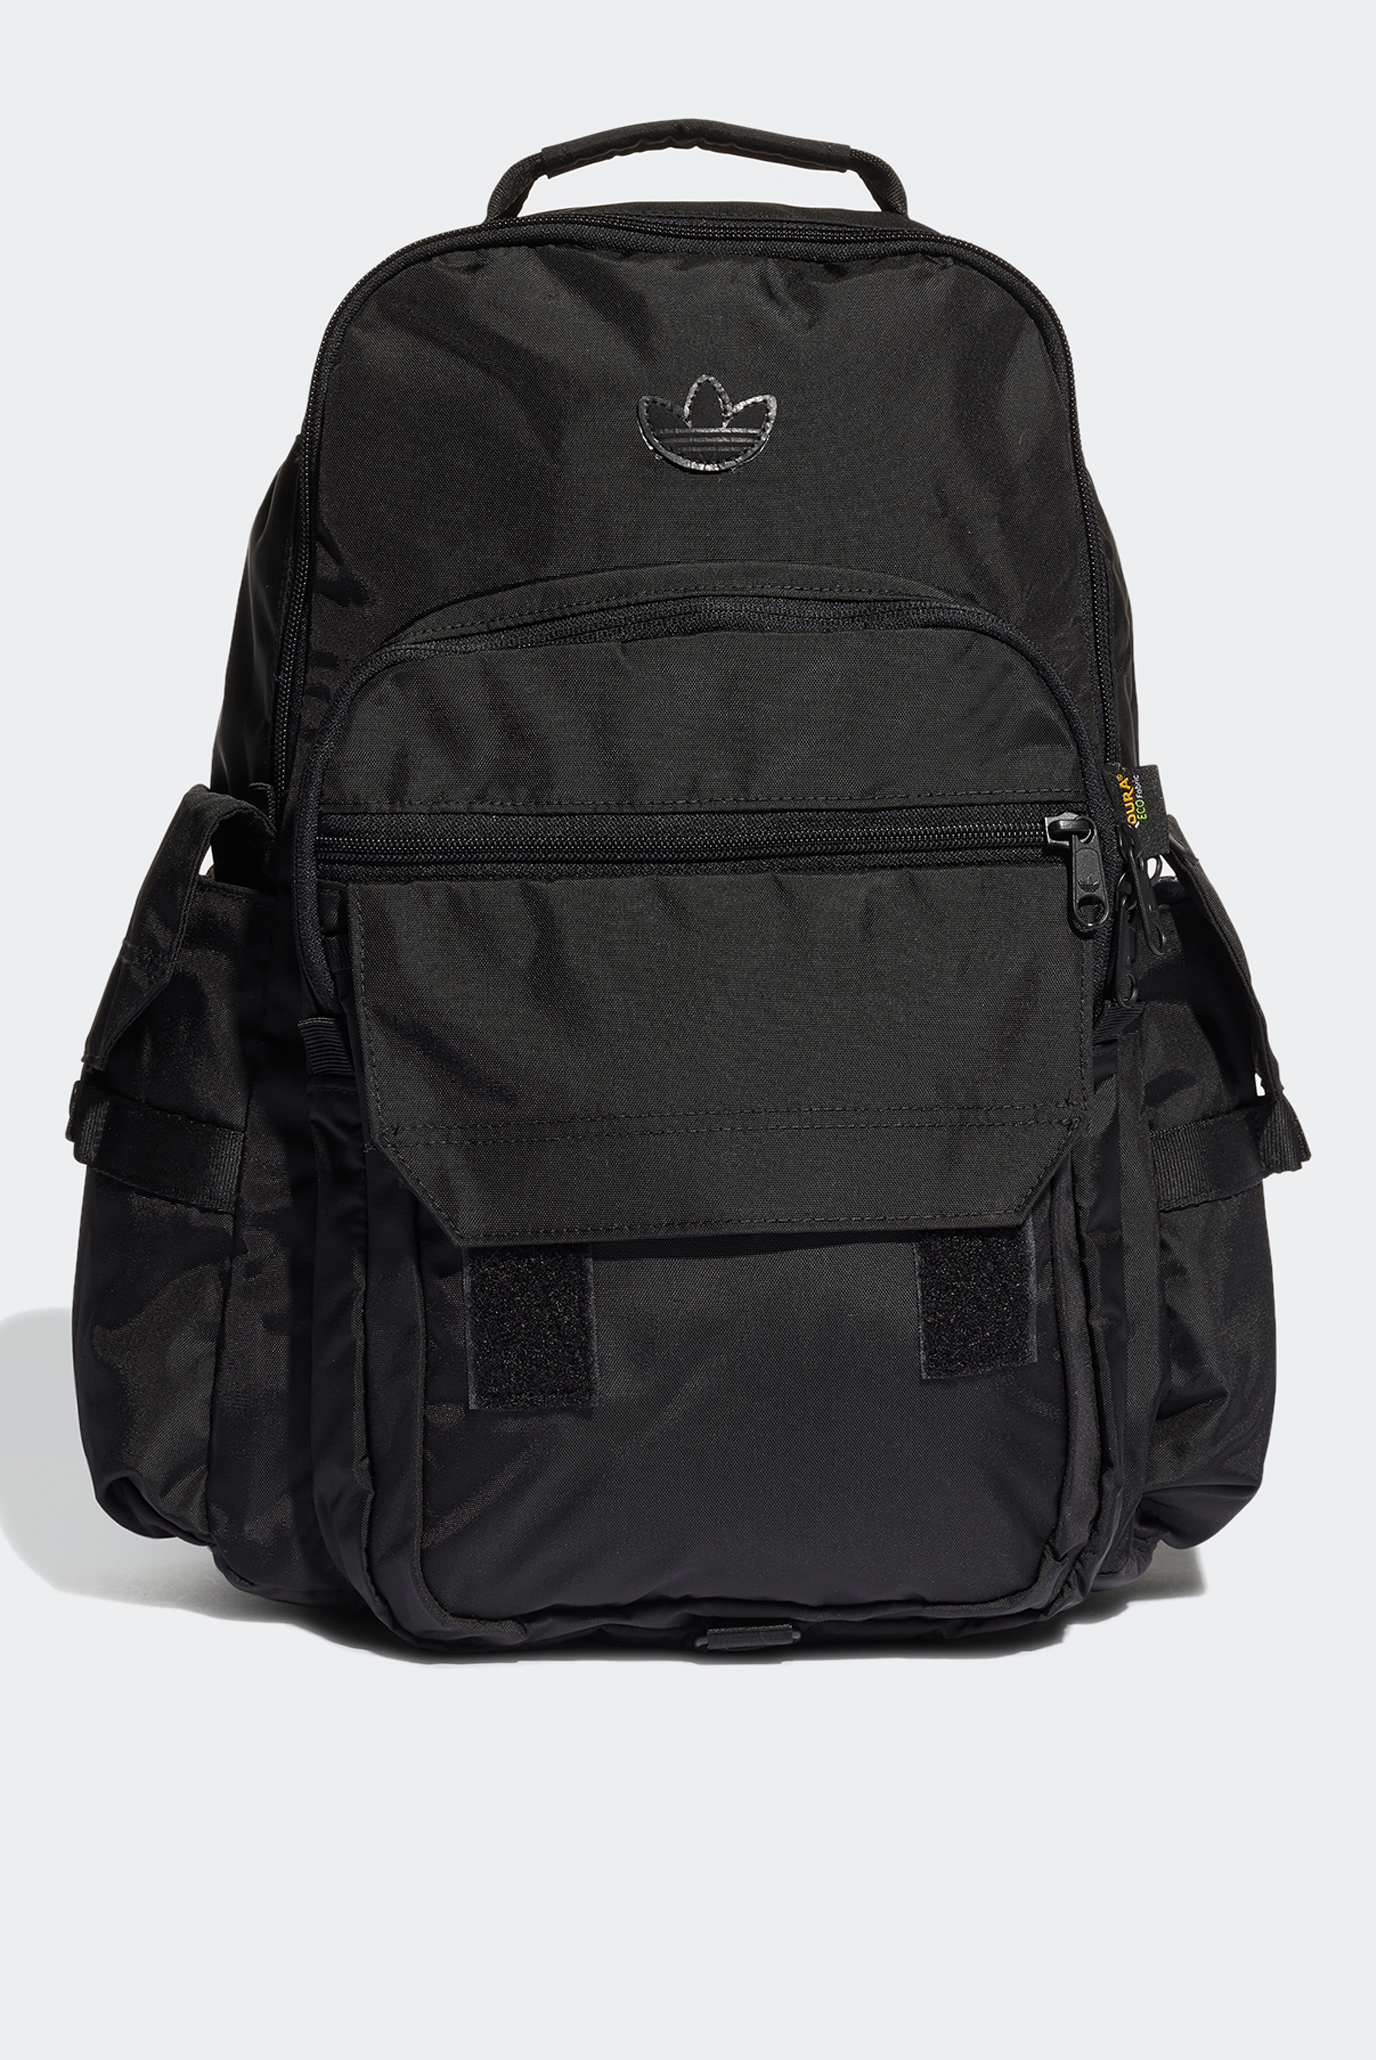 Черный рюкзак Adicolor Contempo Utility Large 1